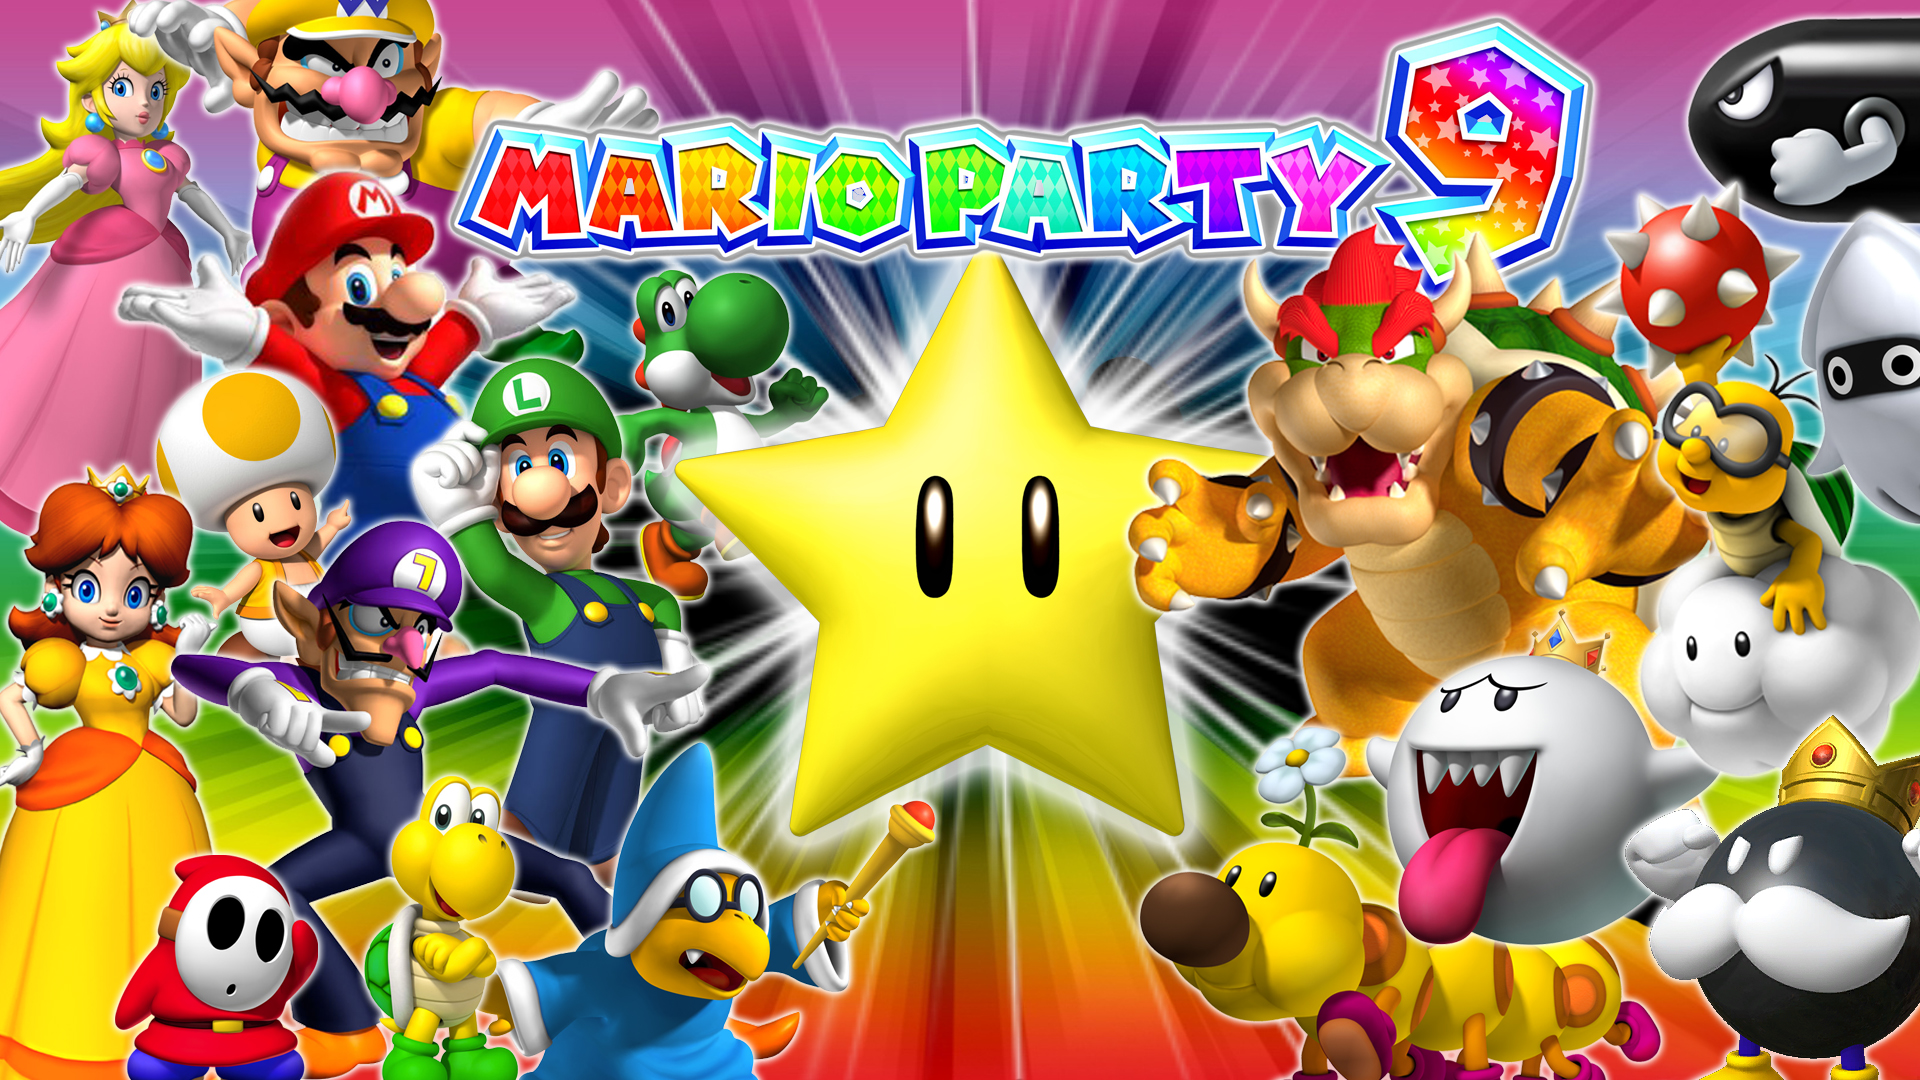 Image - Gjhghj.jpg - The Mario Party Wiki - Wikia